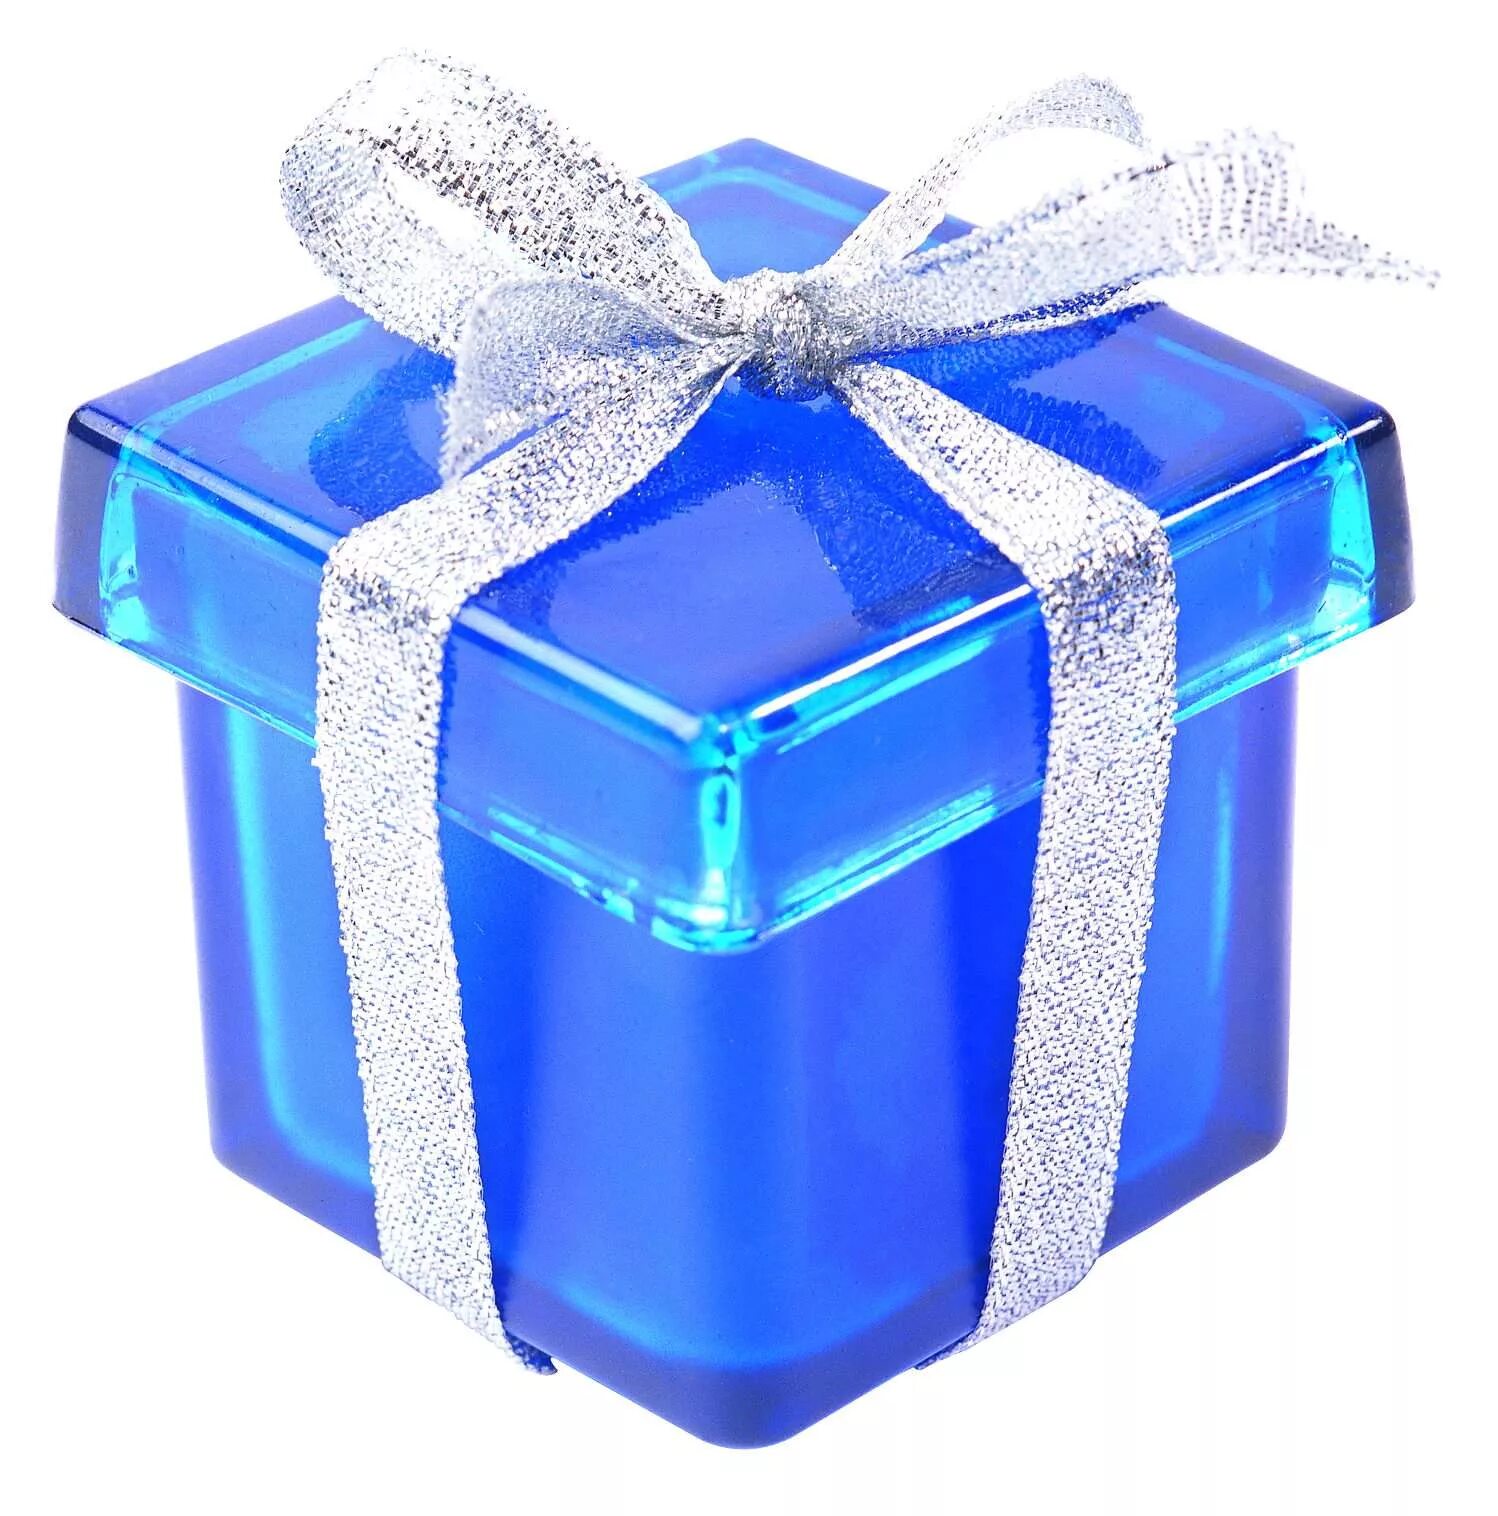 Подарок голубой. Подарок синий. Подарок синяя коробка. Подарок на день рождения. Подарки подскажите